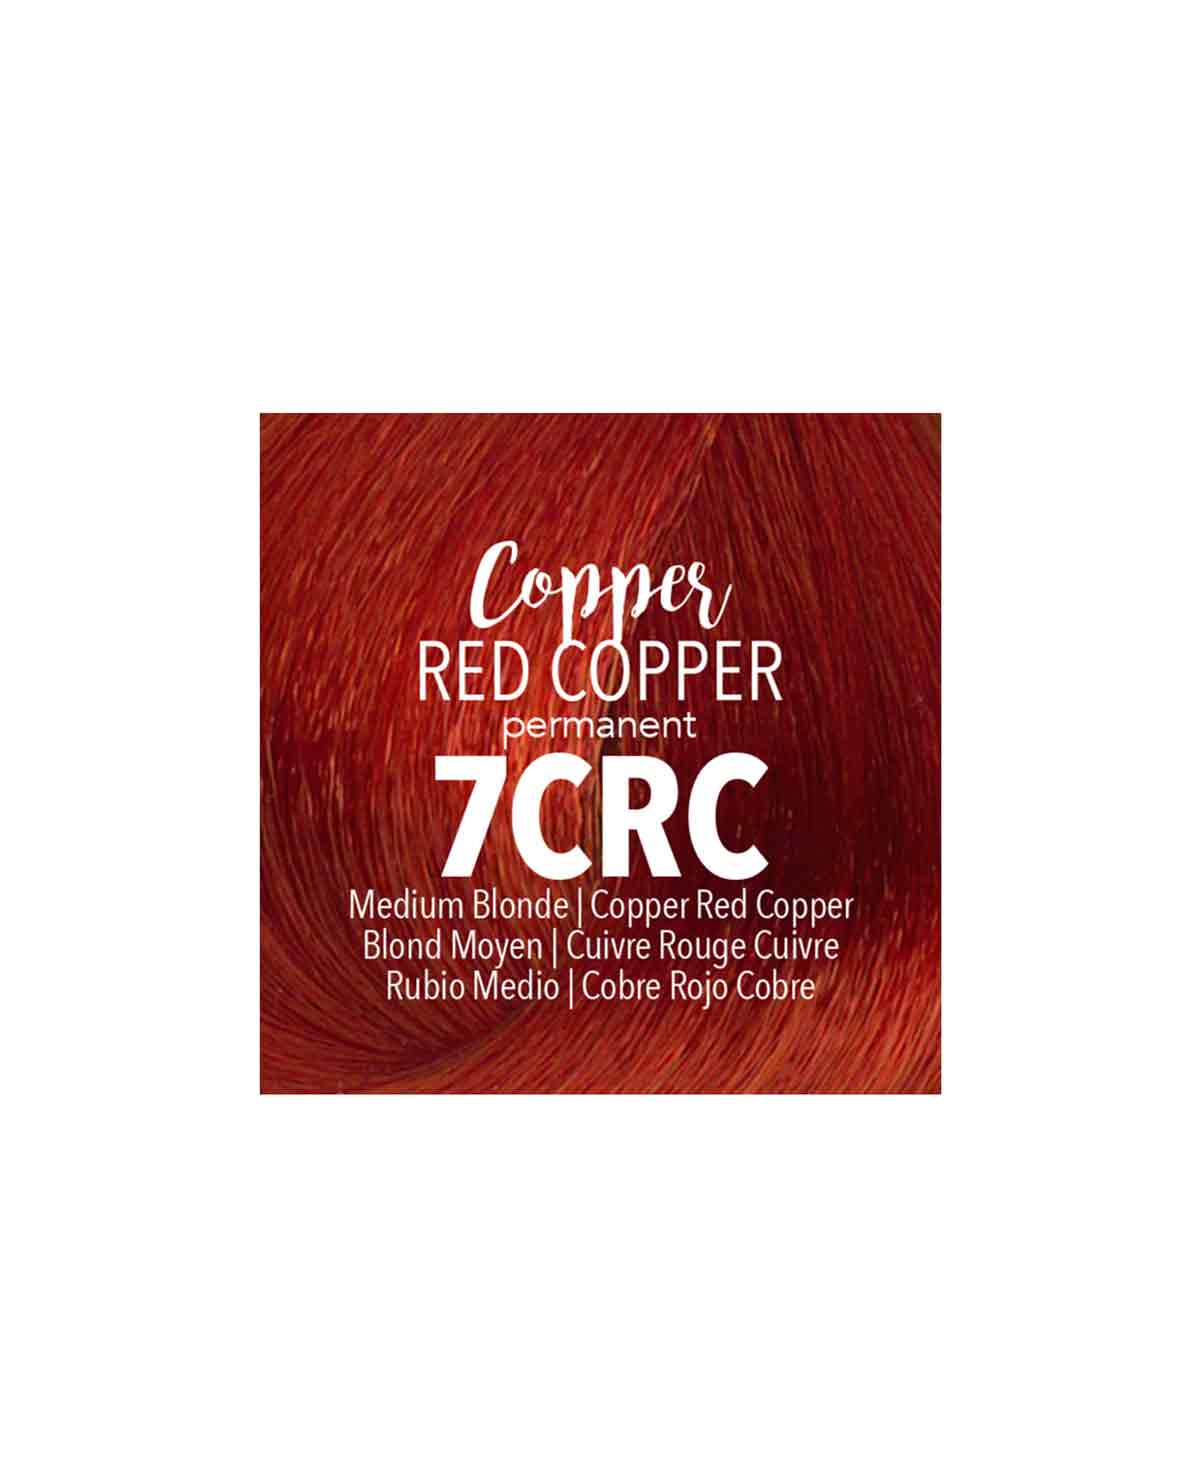 Mydentity - 7CRC Medium Blonde Copper Red Copper